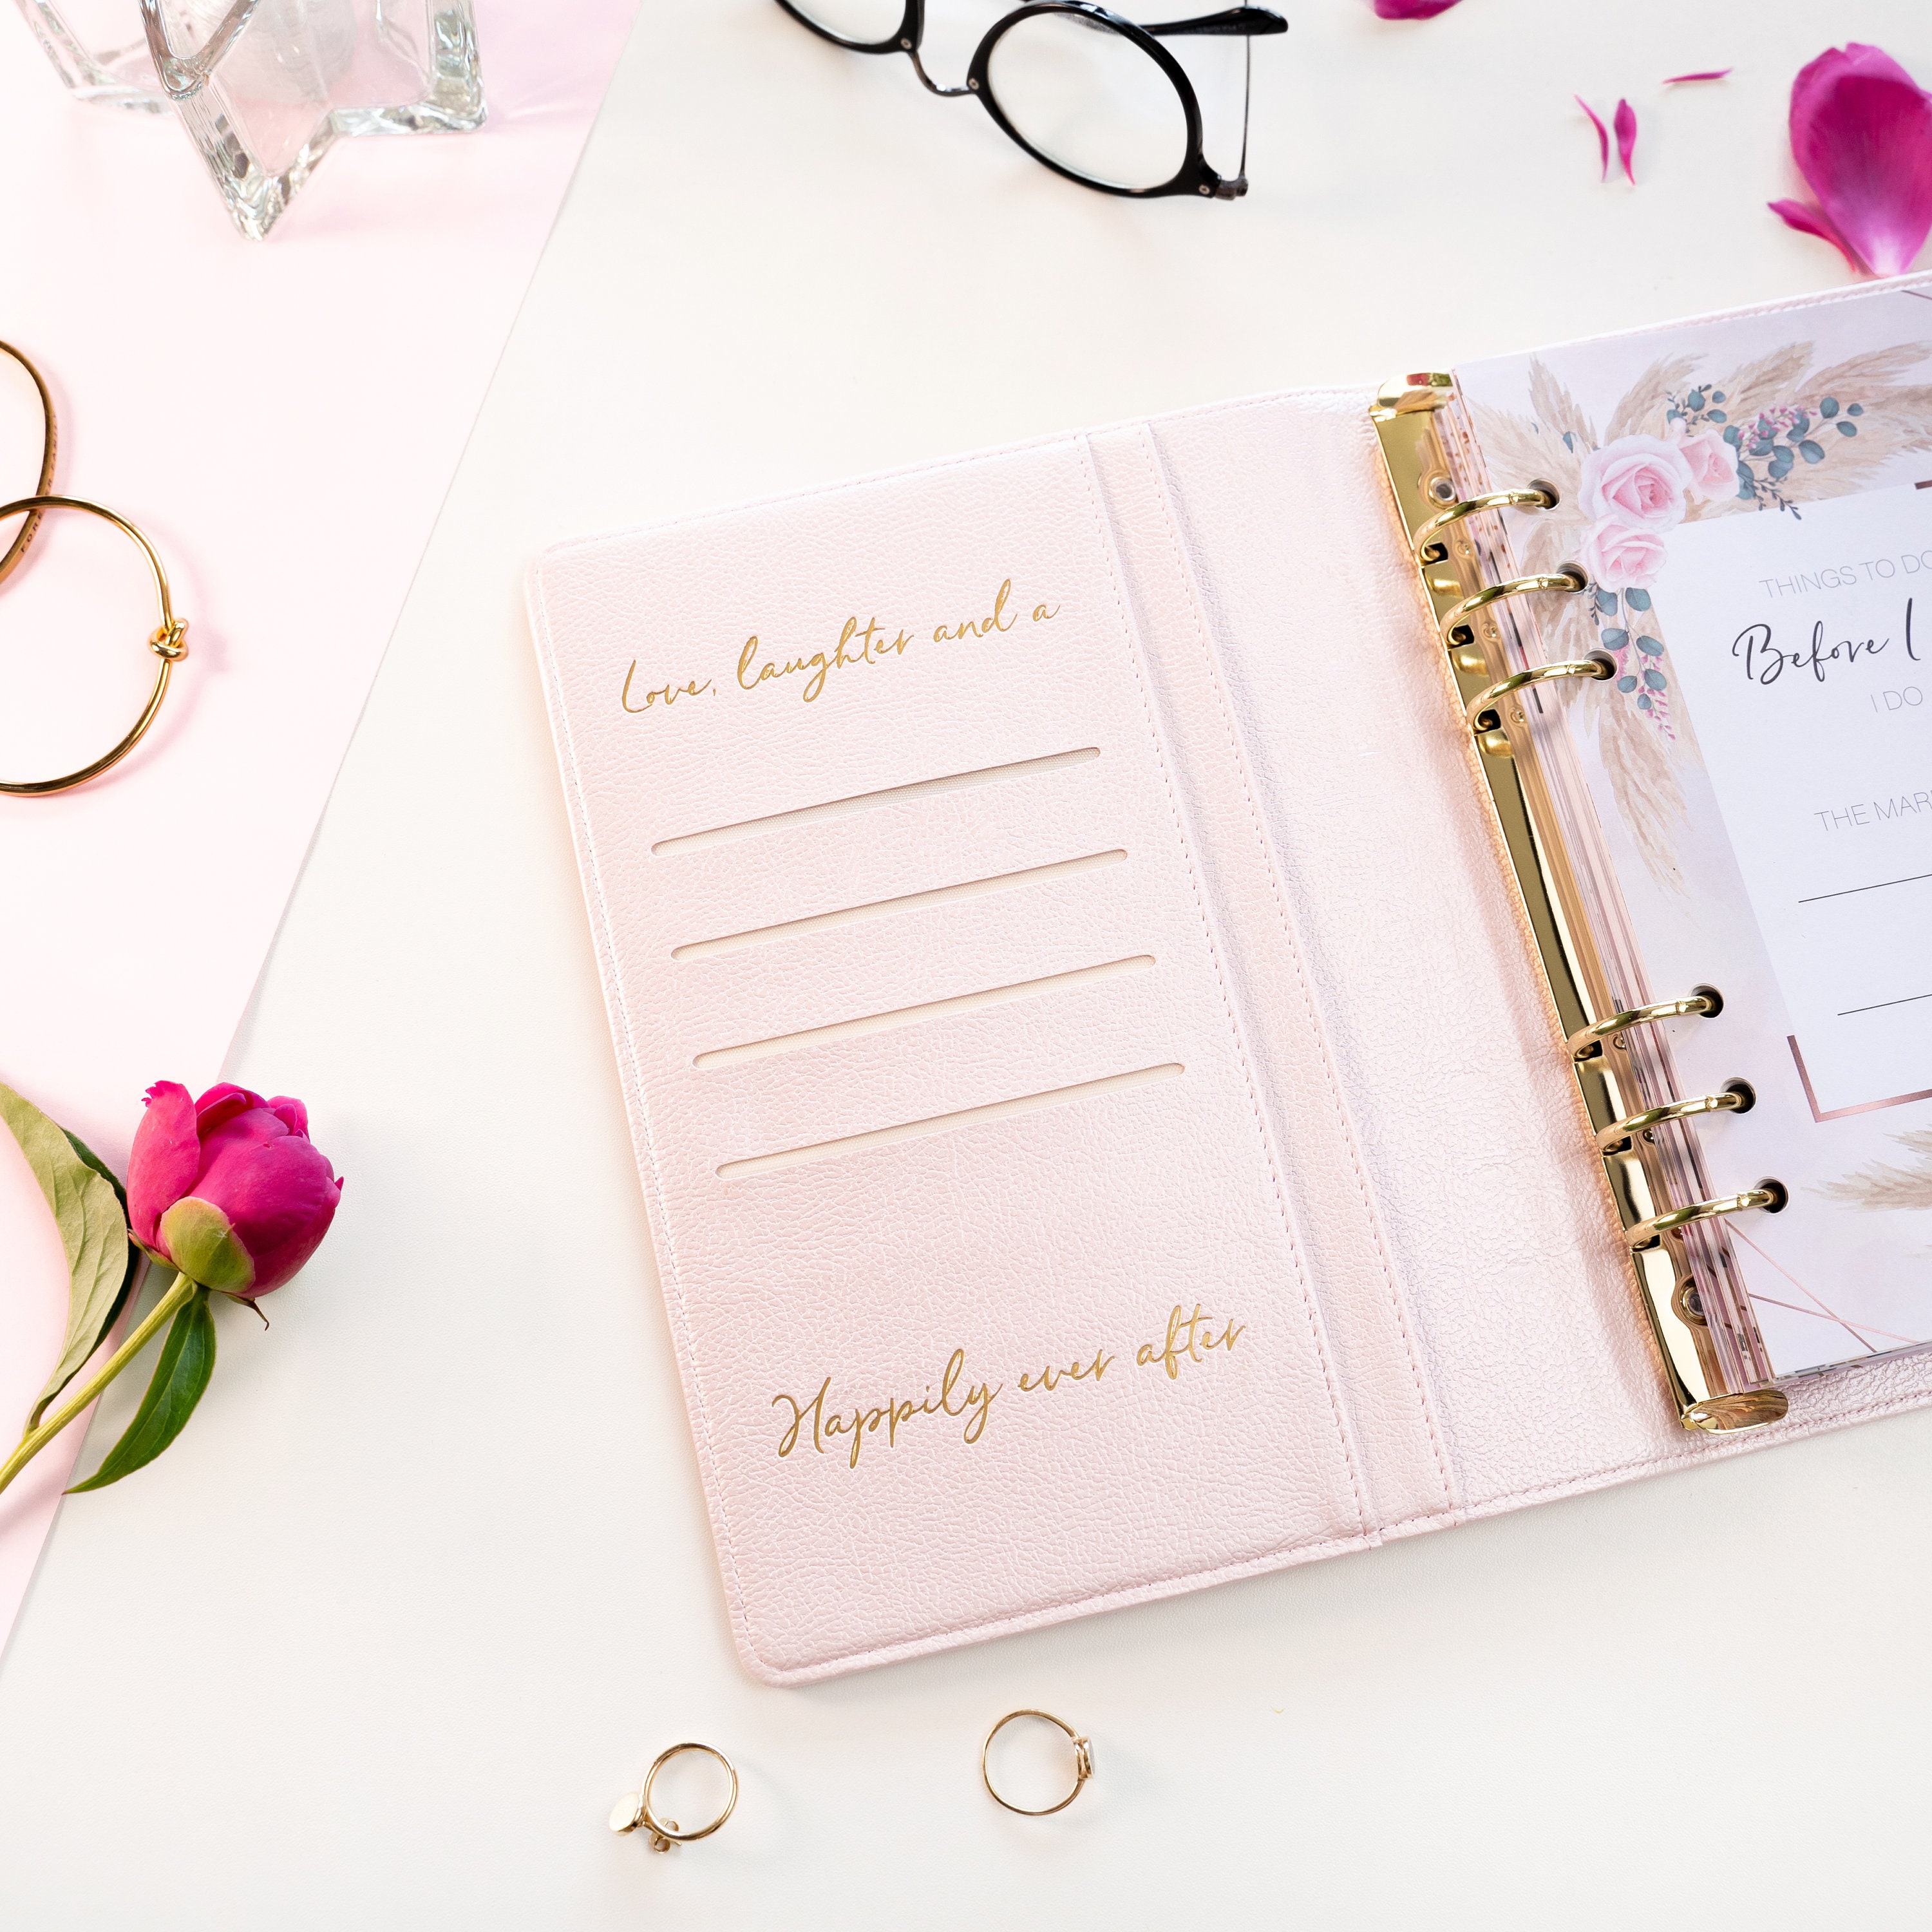 Elegant Design Events LTD Wedding Planner for Bride - Wedding Planning Book & Organizer - Bridal Planner Organizer & Wedding Checklist - Engagement